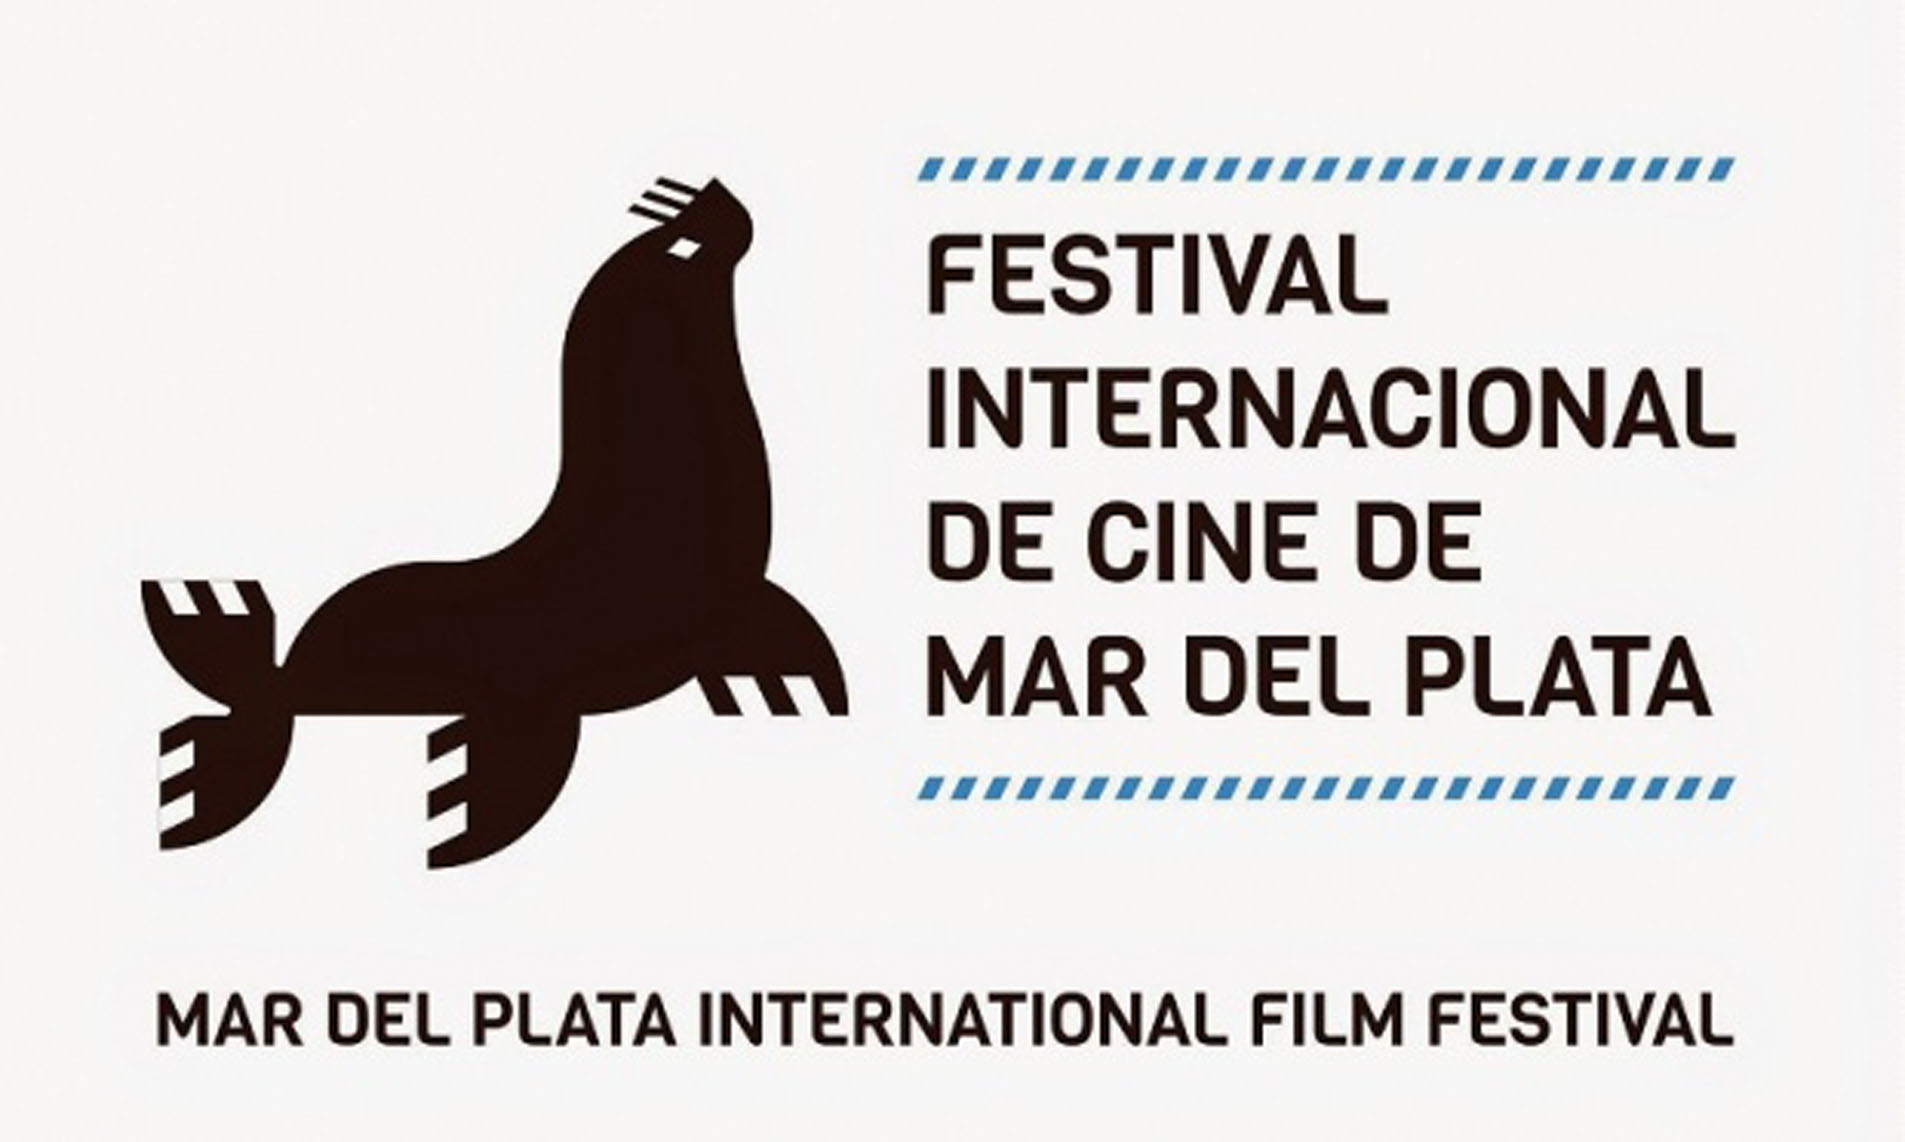 El 10 de noviembre comienza el Festival Internacional de Cine de Mar del Plata